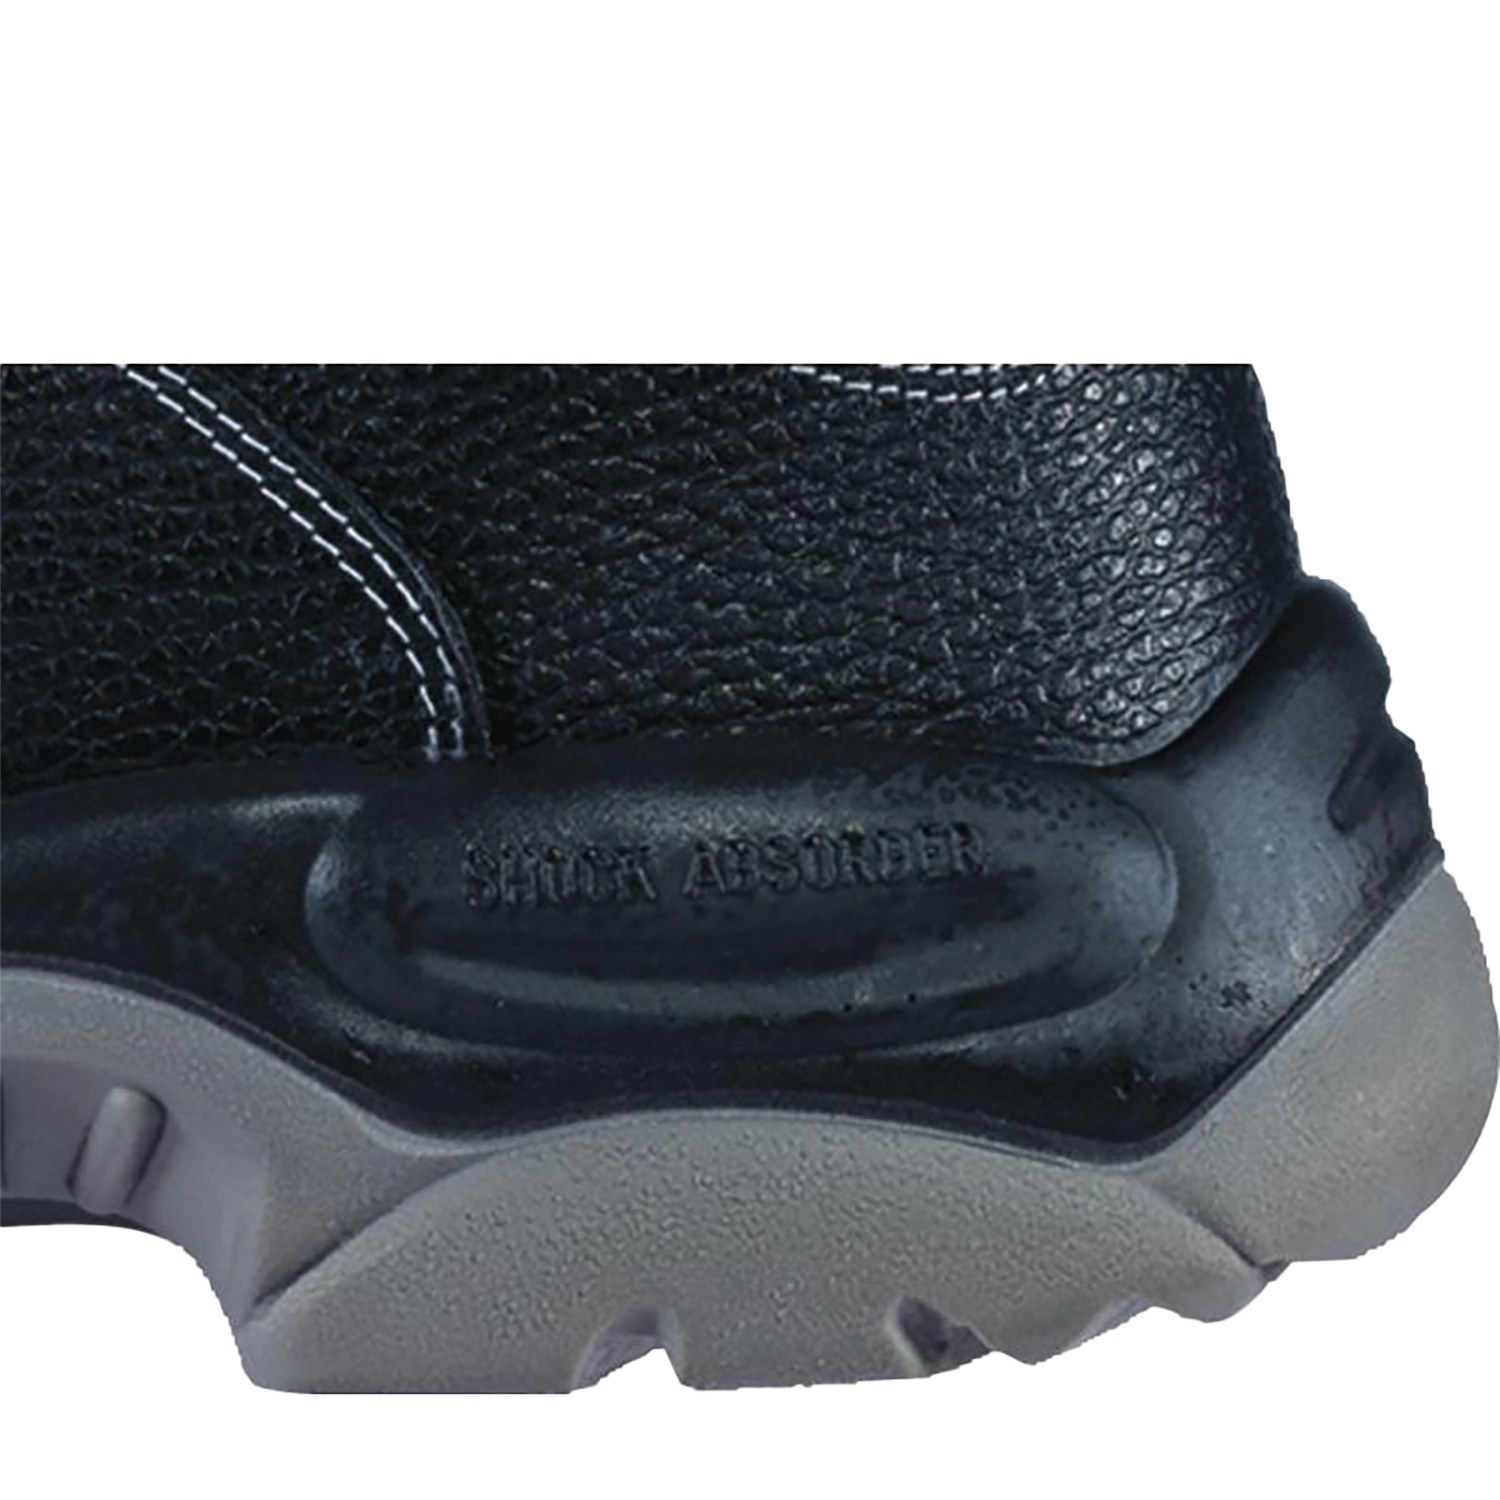 Hoog model schoenen - X-Large  - Sault S3 - zwart - maat 49